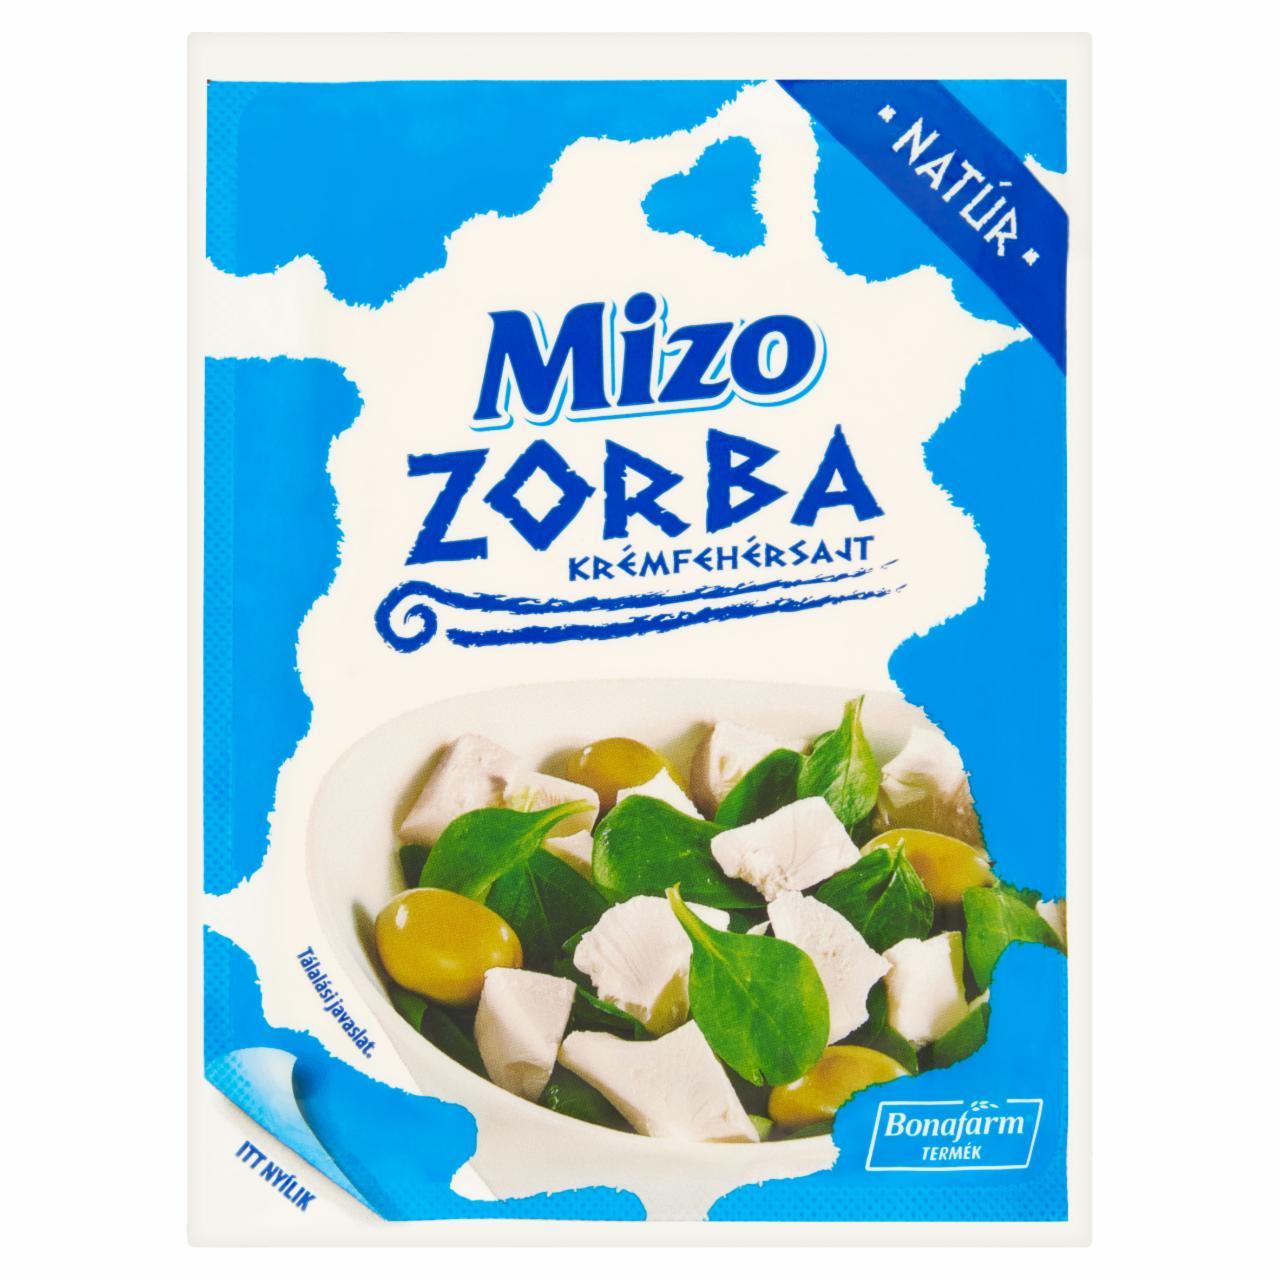 Képek - Mizo Zorba zsíros, lágy, natúr krémfehérsajt 250 g